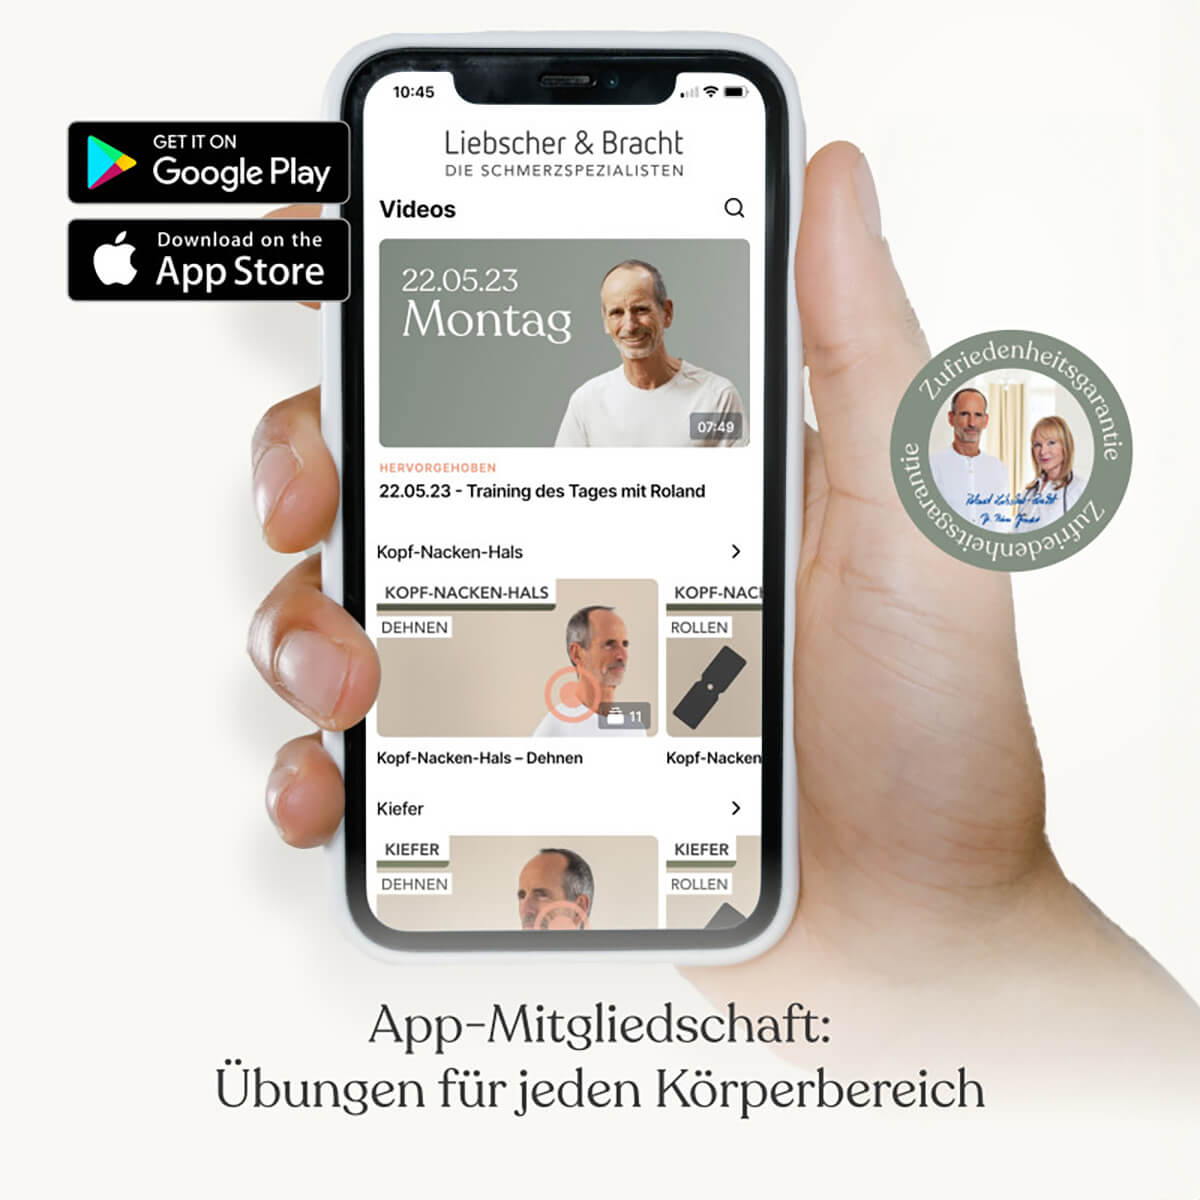 Die Liebscher & Bracht App  mit Übungen für jeden Körperbereich wird auf einem Smartphone gezeigt.